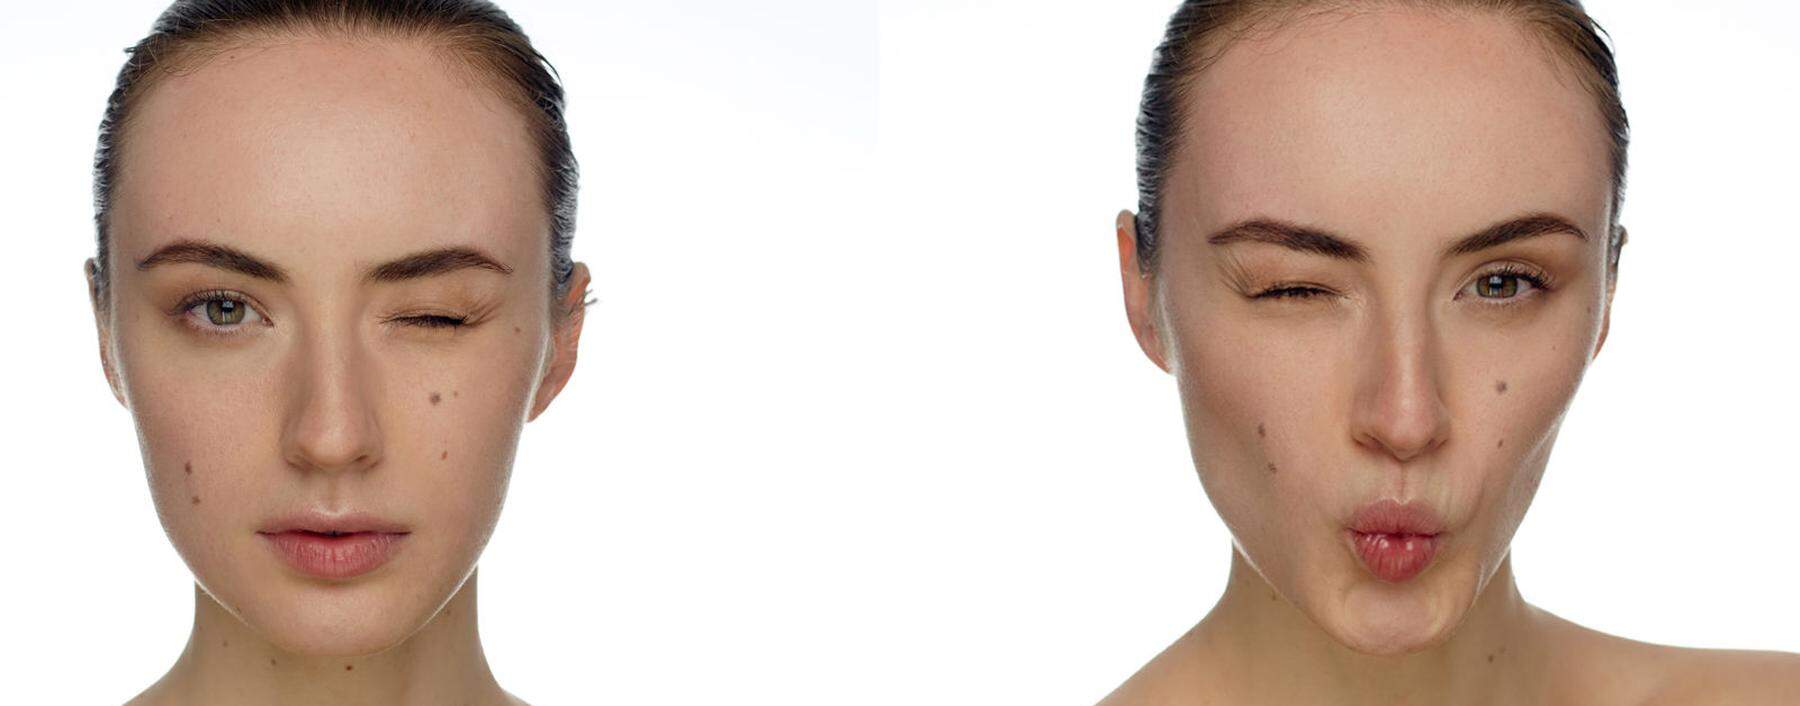 Blinzelworkout. Anastasia Goron trainiert mit bis zu 400.000 Tiktok-Followern ihr Gesicht.